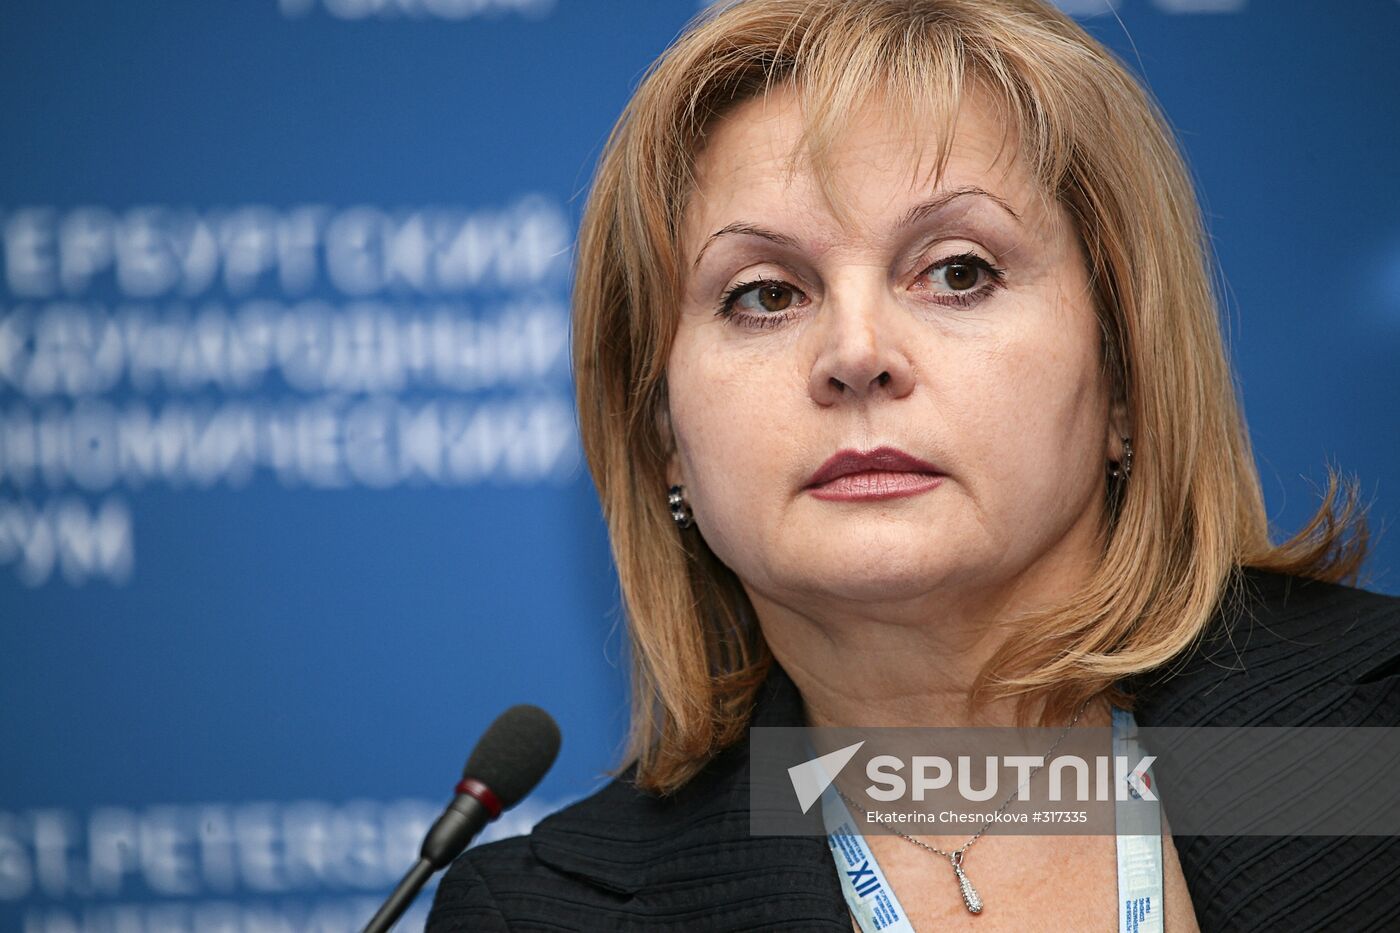 Ella Pamfilova Human Rights Council chairperson